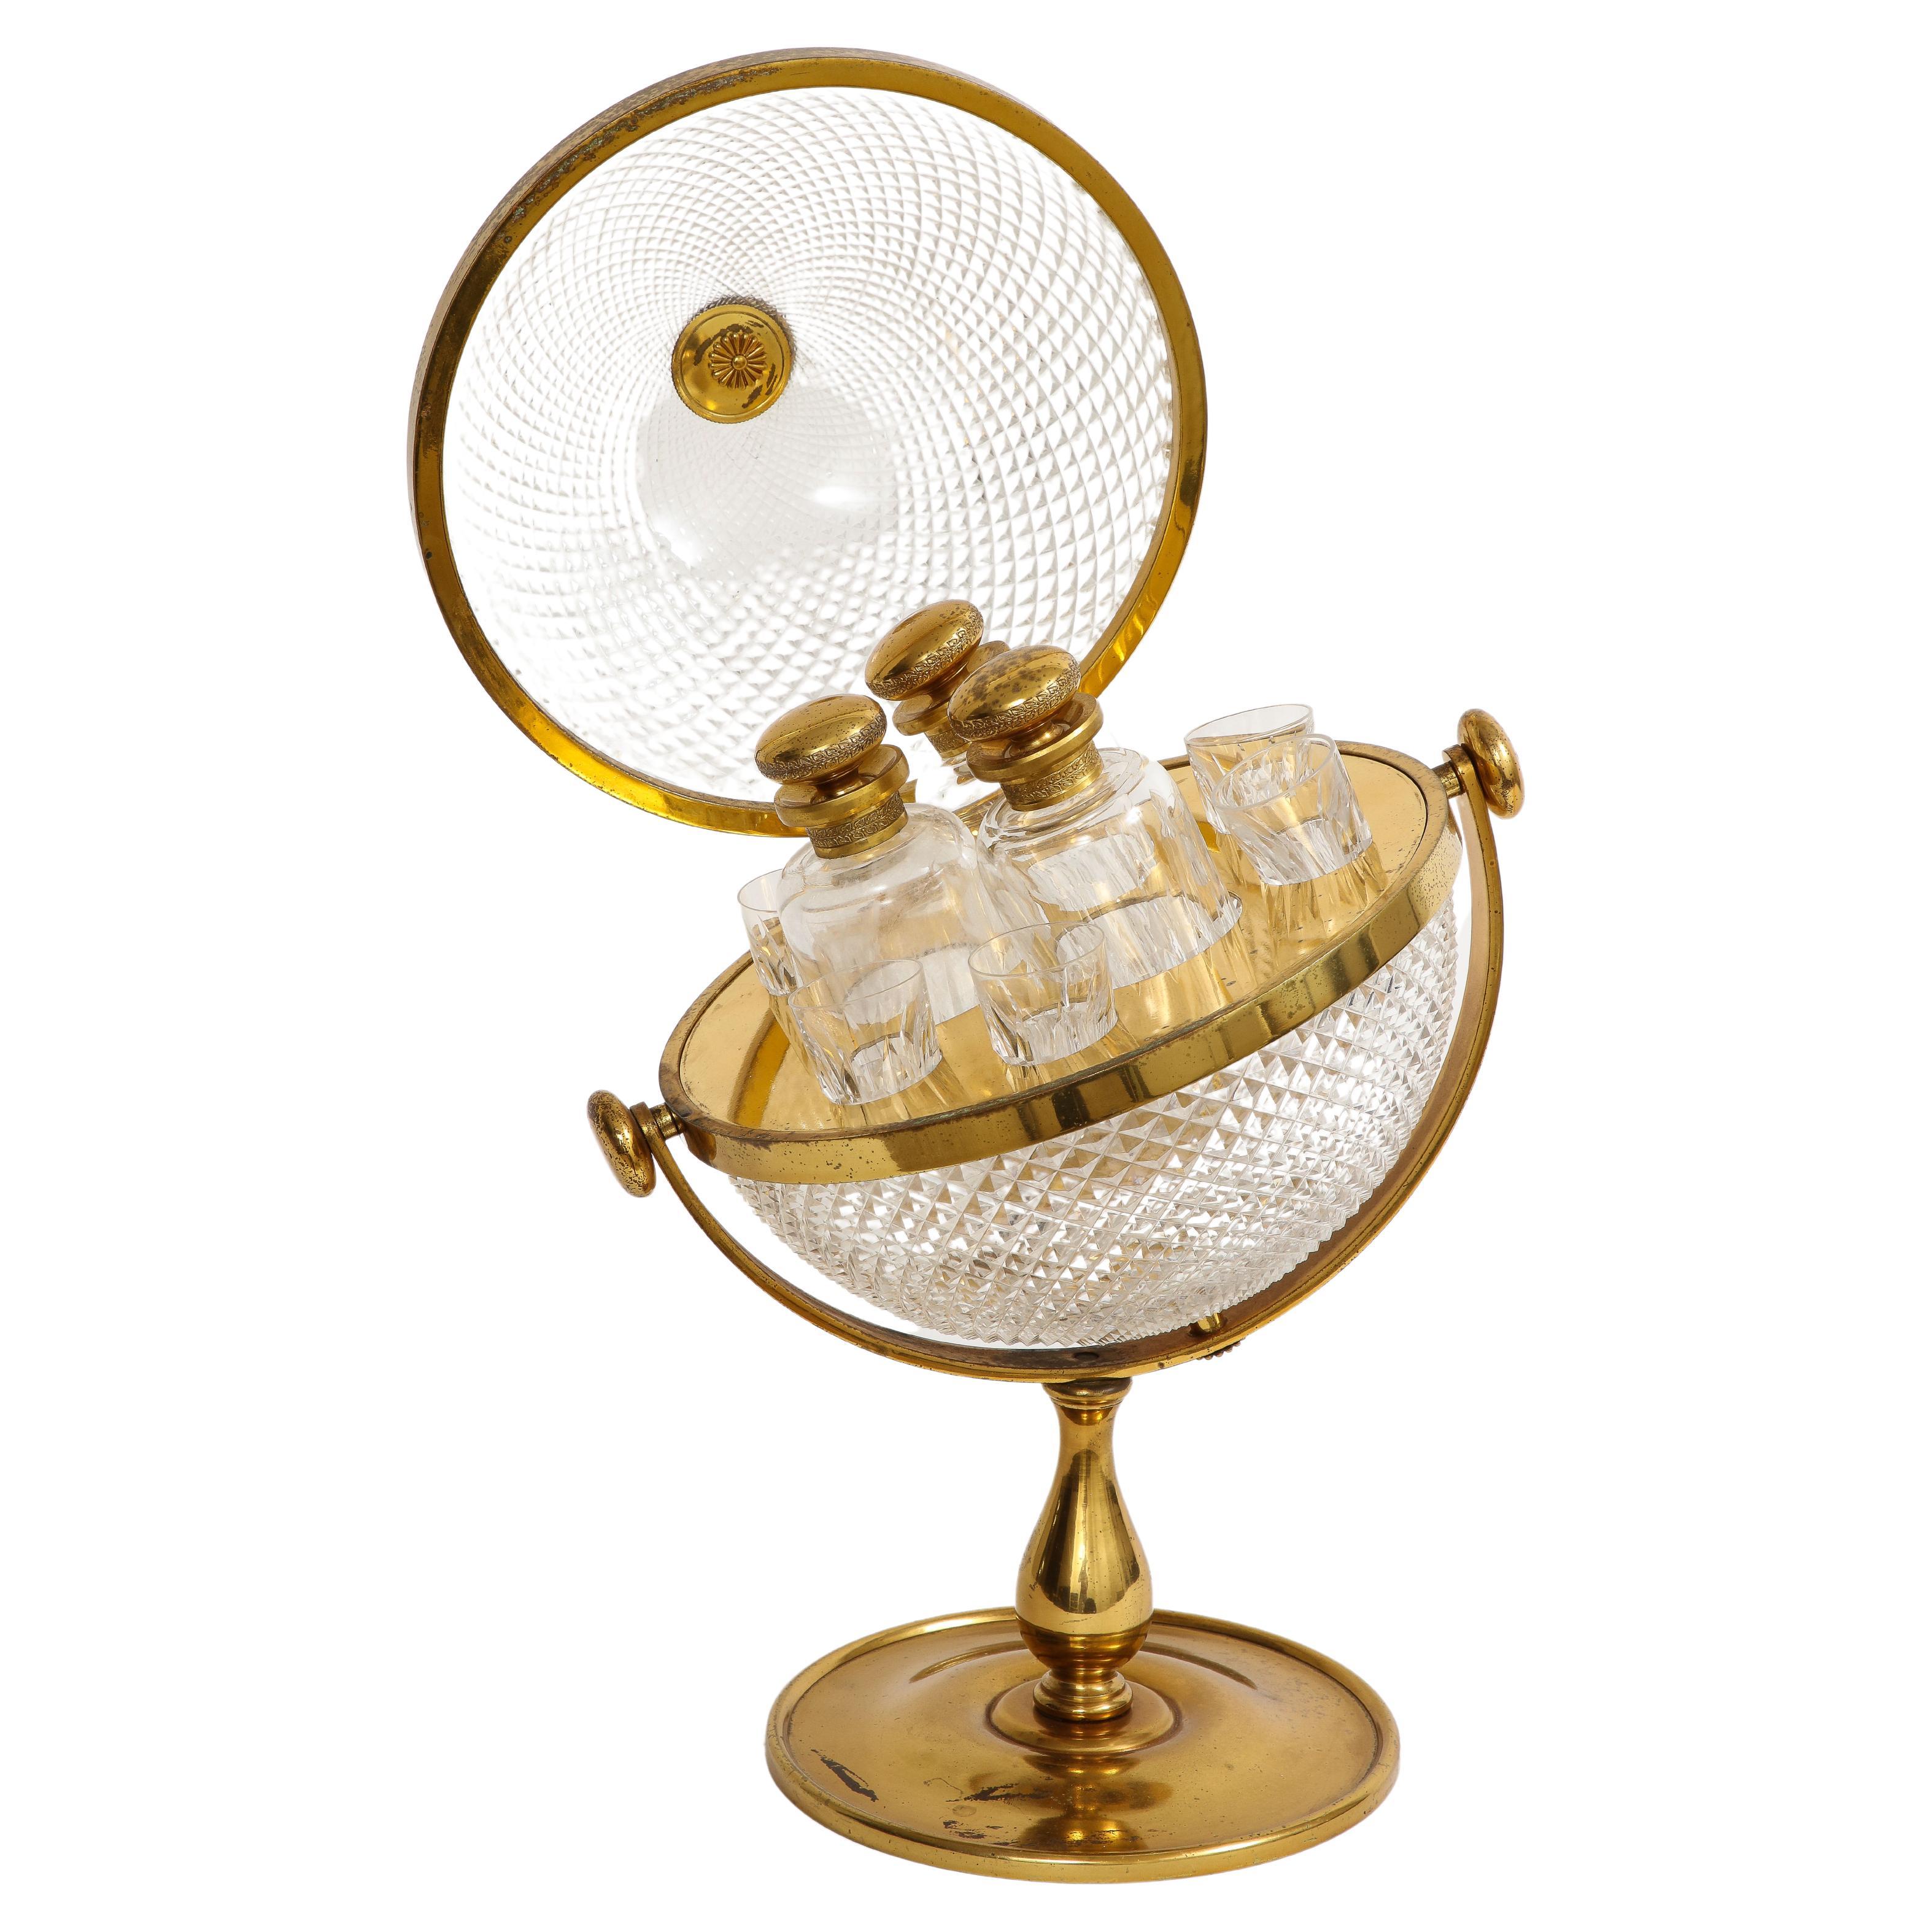 Französisches Tantalus-quor-Set im Globen-Stil des 19. Jahrhunderts, Goldbronze-Montiert, abgerundet, Tantalus